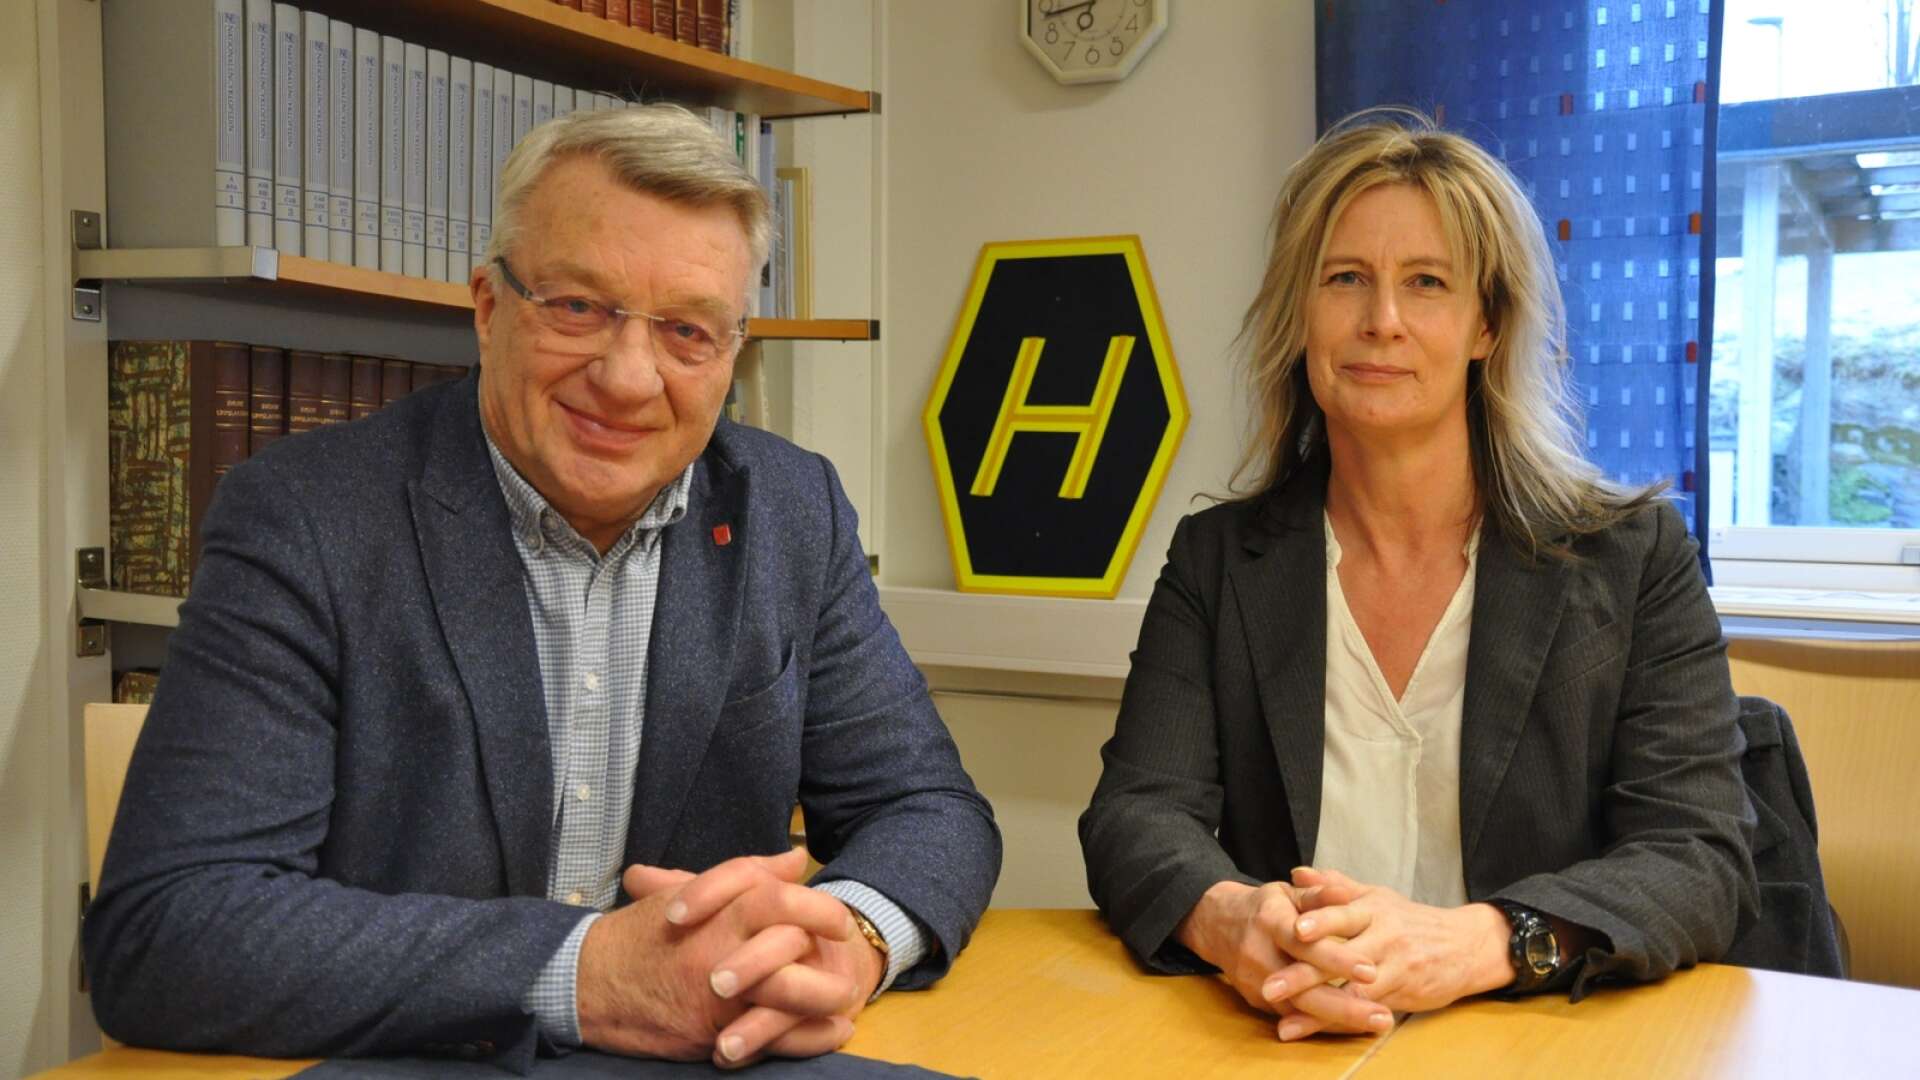 Stig Bertilsson (M) och Susanne Öhrn – Öhrn som i kommunvalet 2022 ställer upp för Moderaterna. I bakgrunden syns den skylt som symboliserade övergången till högertrafik 1967.